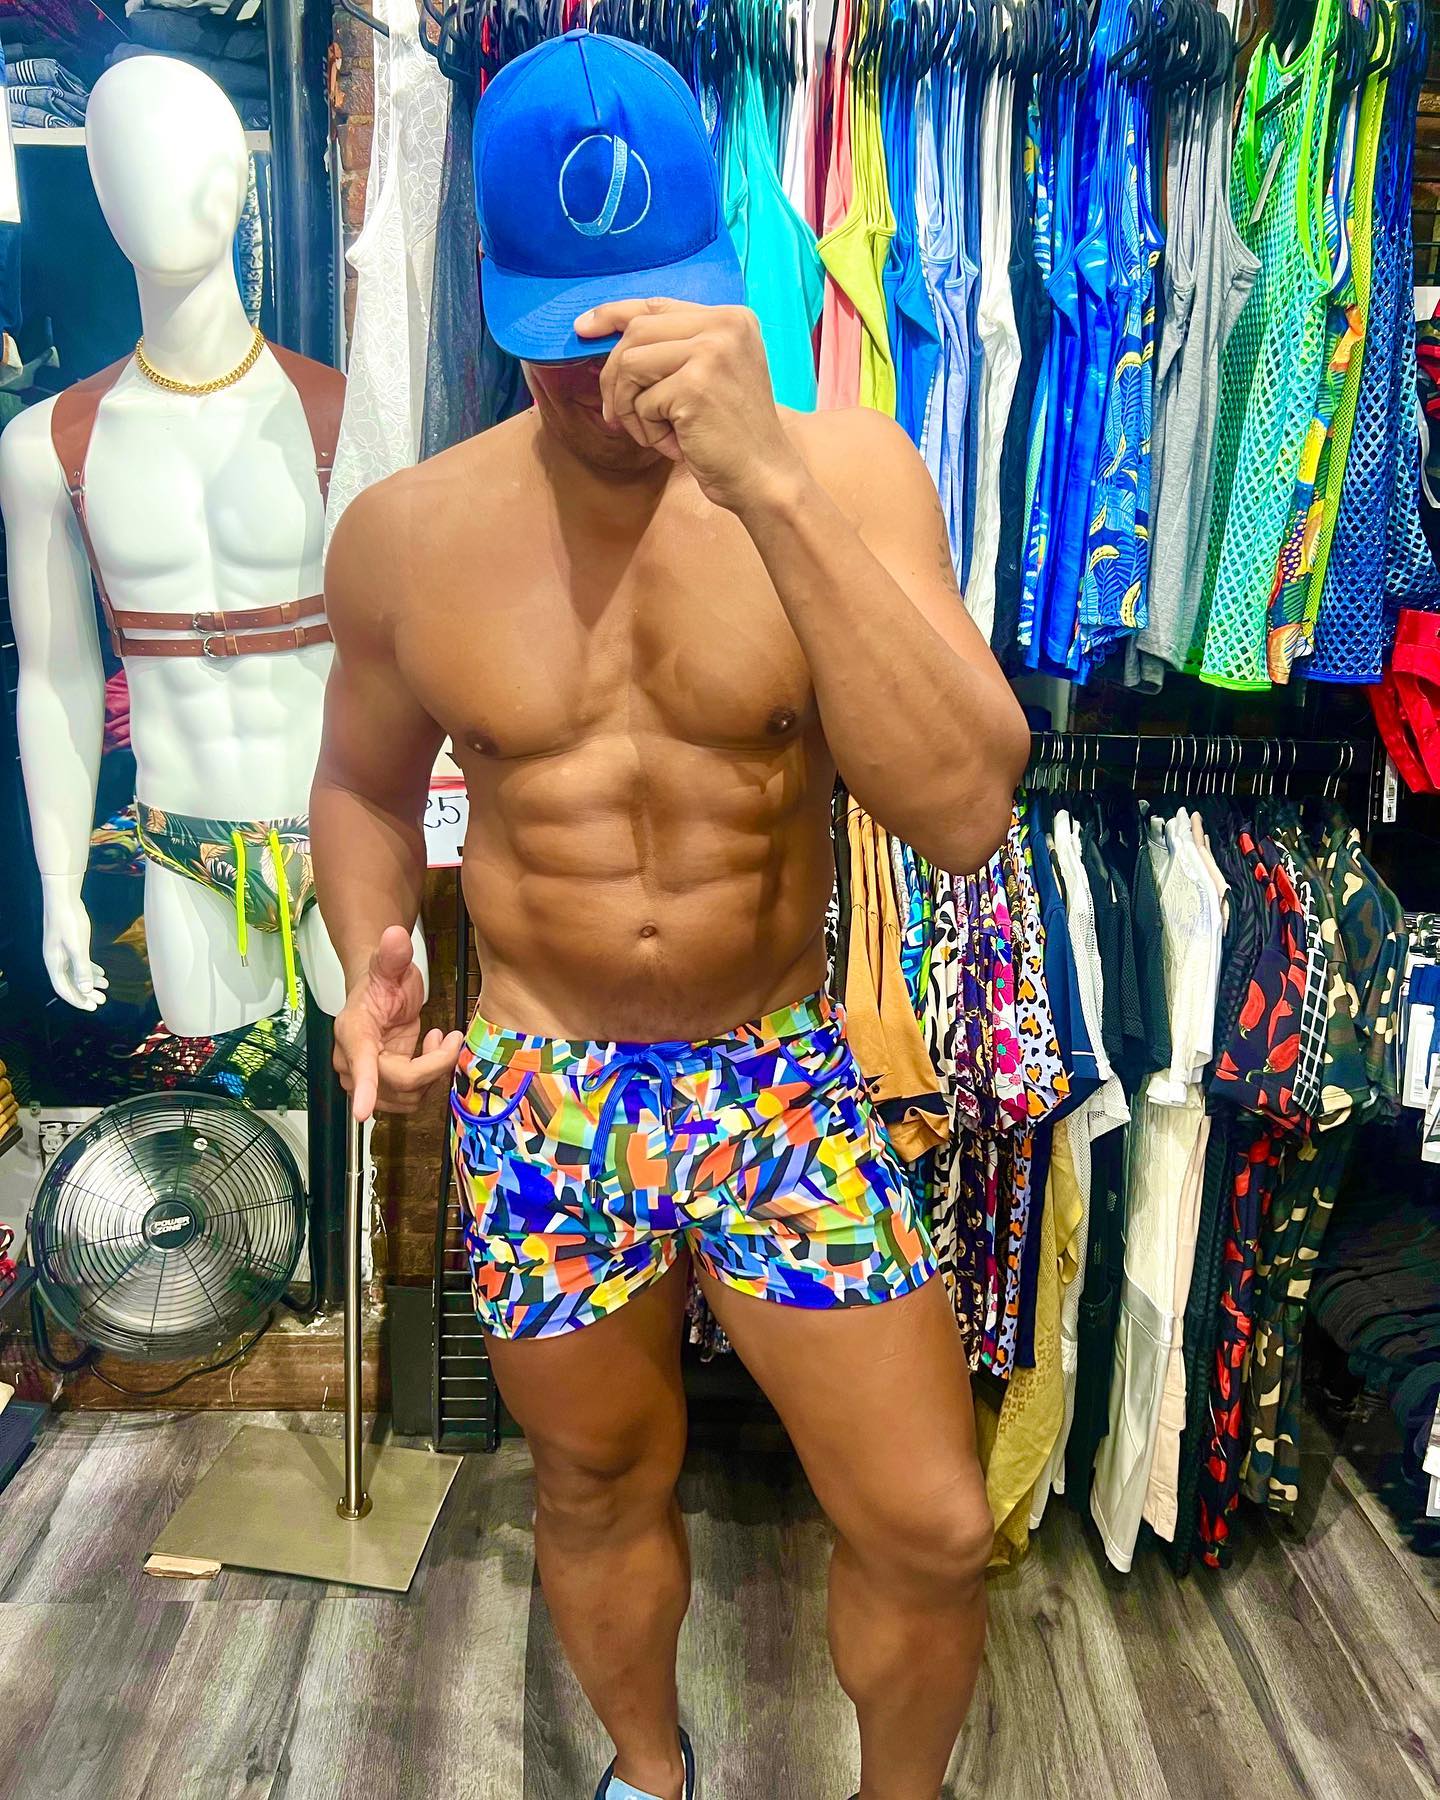 It’s that vacay time‼️🇧🇷
My buddy Jason @style_on_j is always keeping me looking fresh! 
Check out his store in HK or his online store styleonj.com to slay the fashion game‼️
.
.
.
.
.
.
.
.
.
#Fashiongoals #queerfashion #stayfresh #gayfashion #gay #gayboy #instagay #gayman #gaylife #gaypride #gaymen #gaystyle #gaylove #gayguy #fashion #gayselfie #lgbt #gayuk #gaymodel #gayworld #gaystagram #lgbtq #gayfollow #gayusa #pride #queer #gayhot #gayfit #gaydaddy #gayfitness